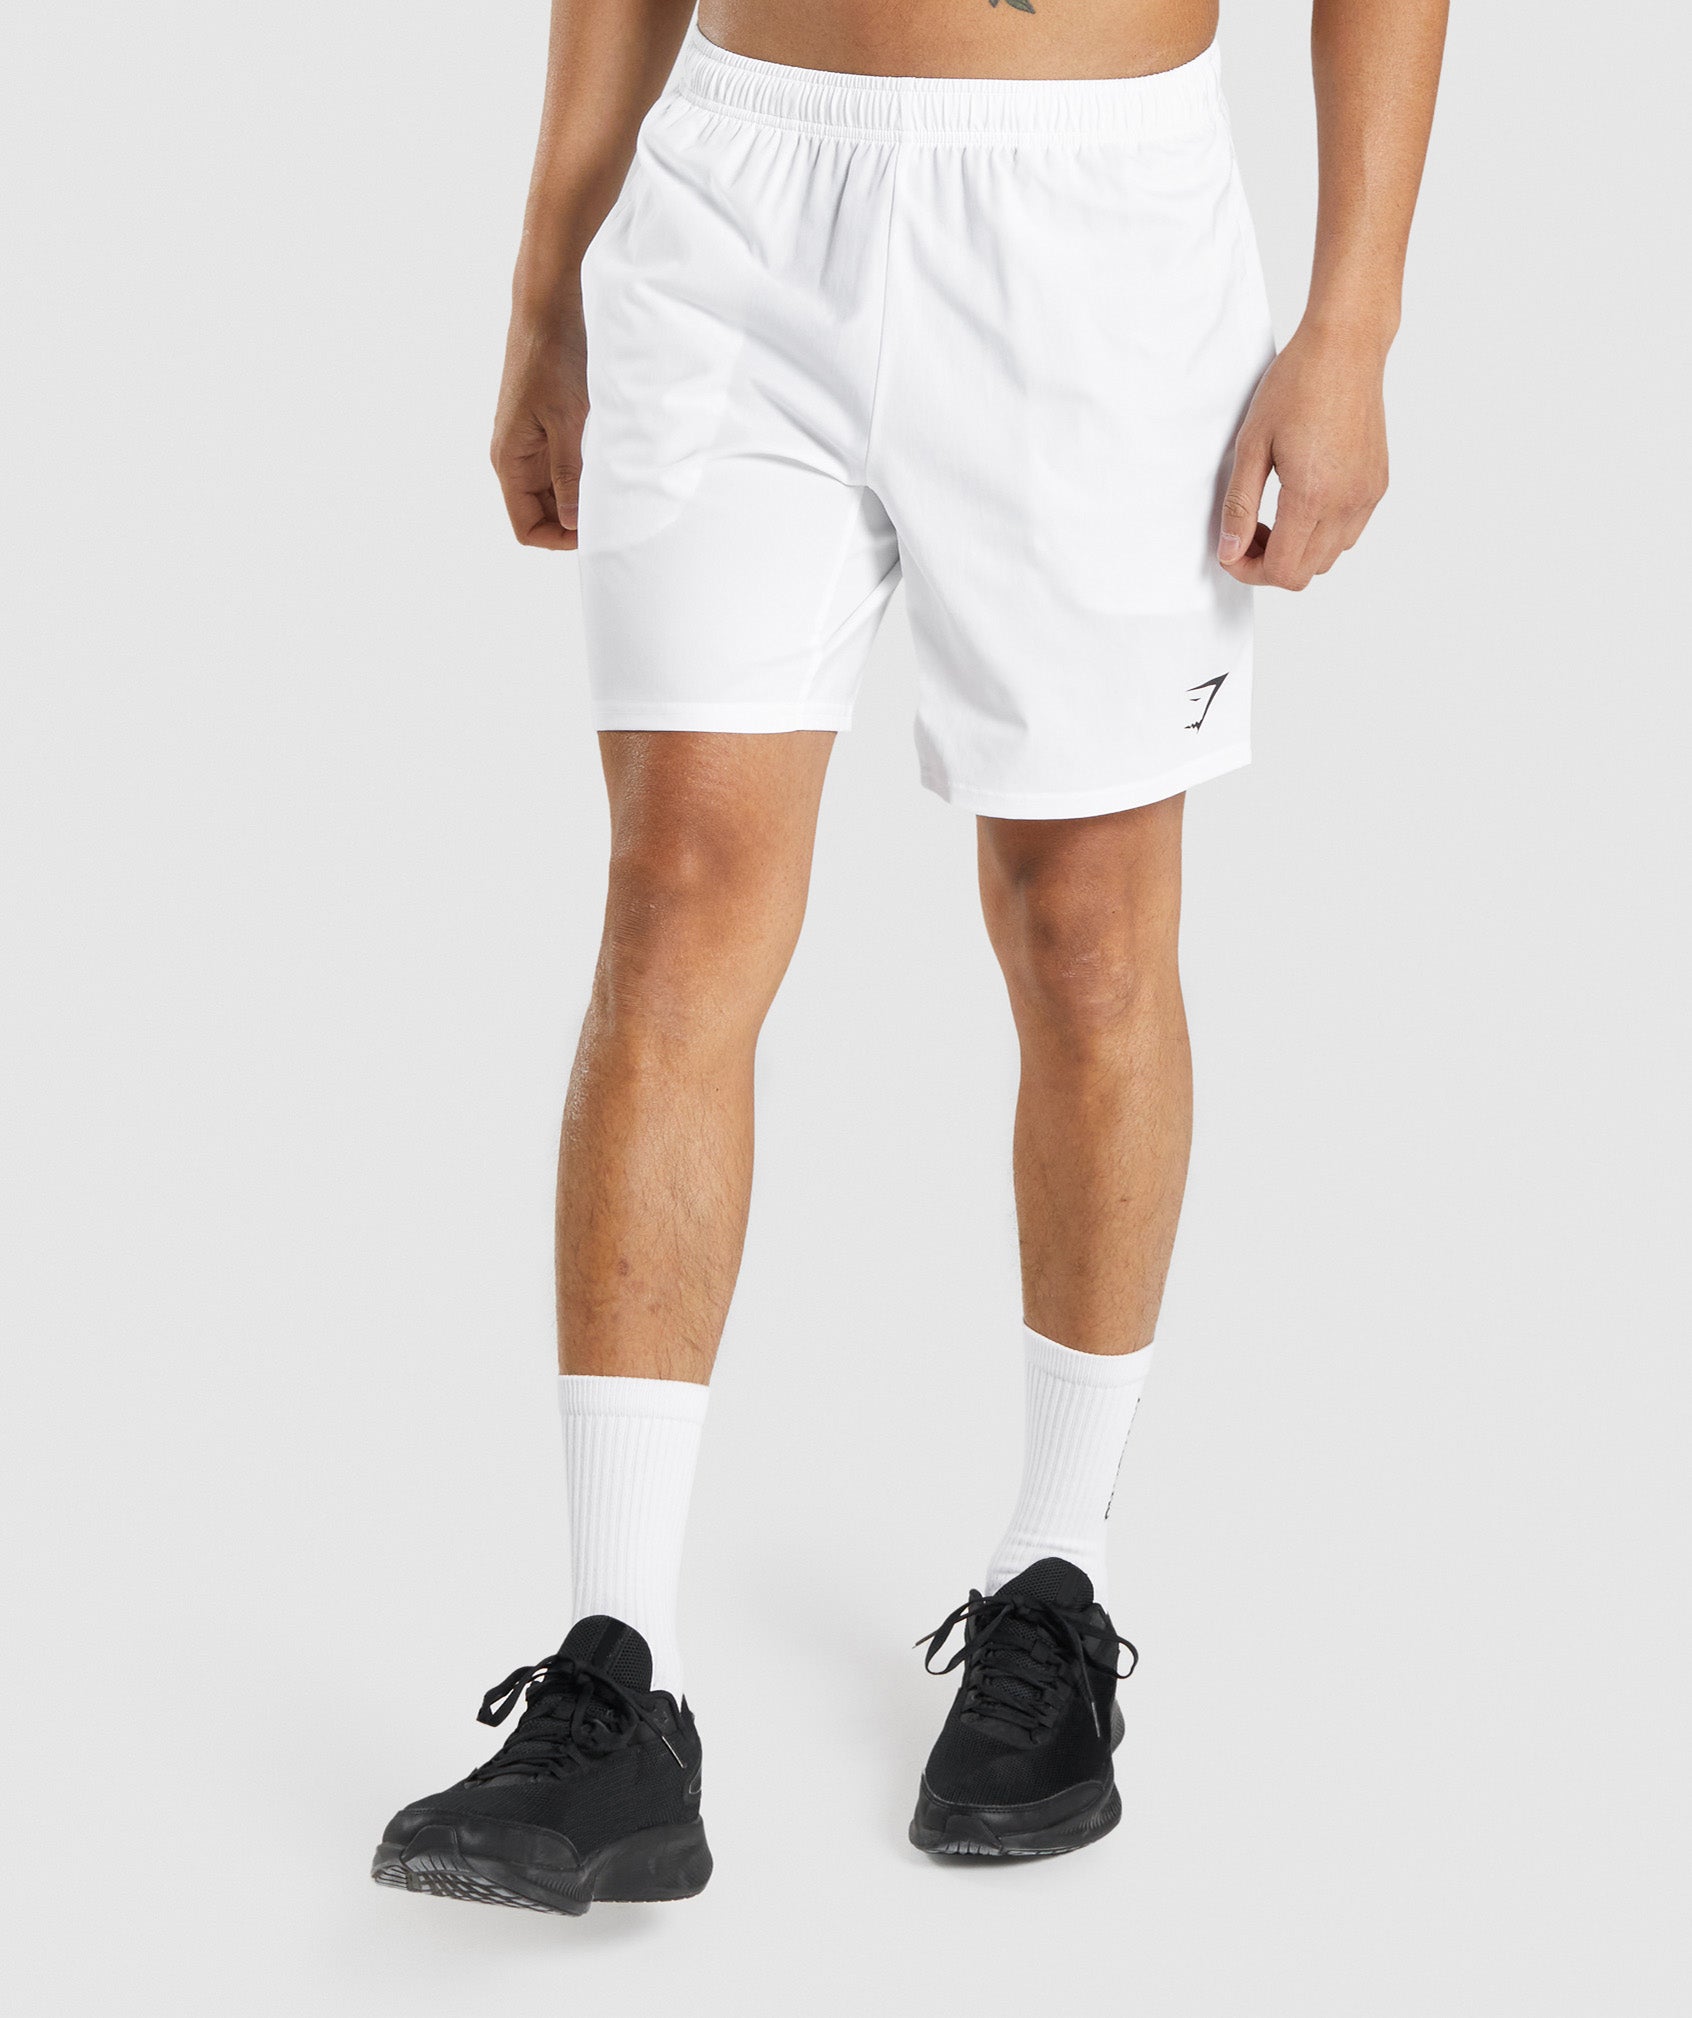 Gymshark Arrival 7 Shorts - White